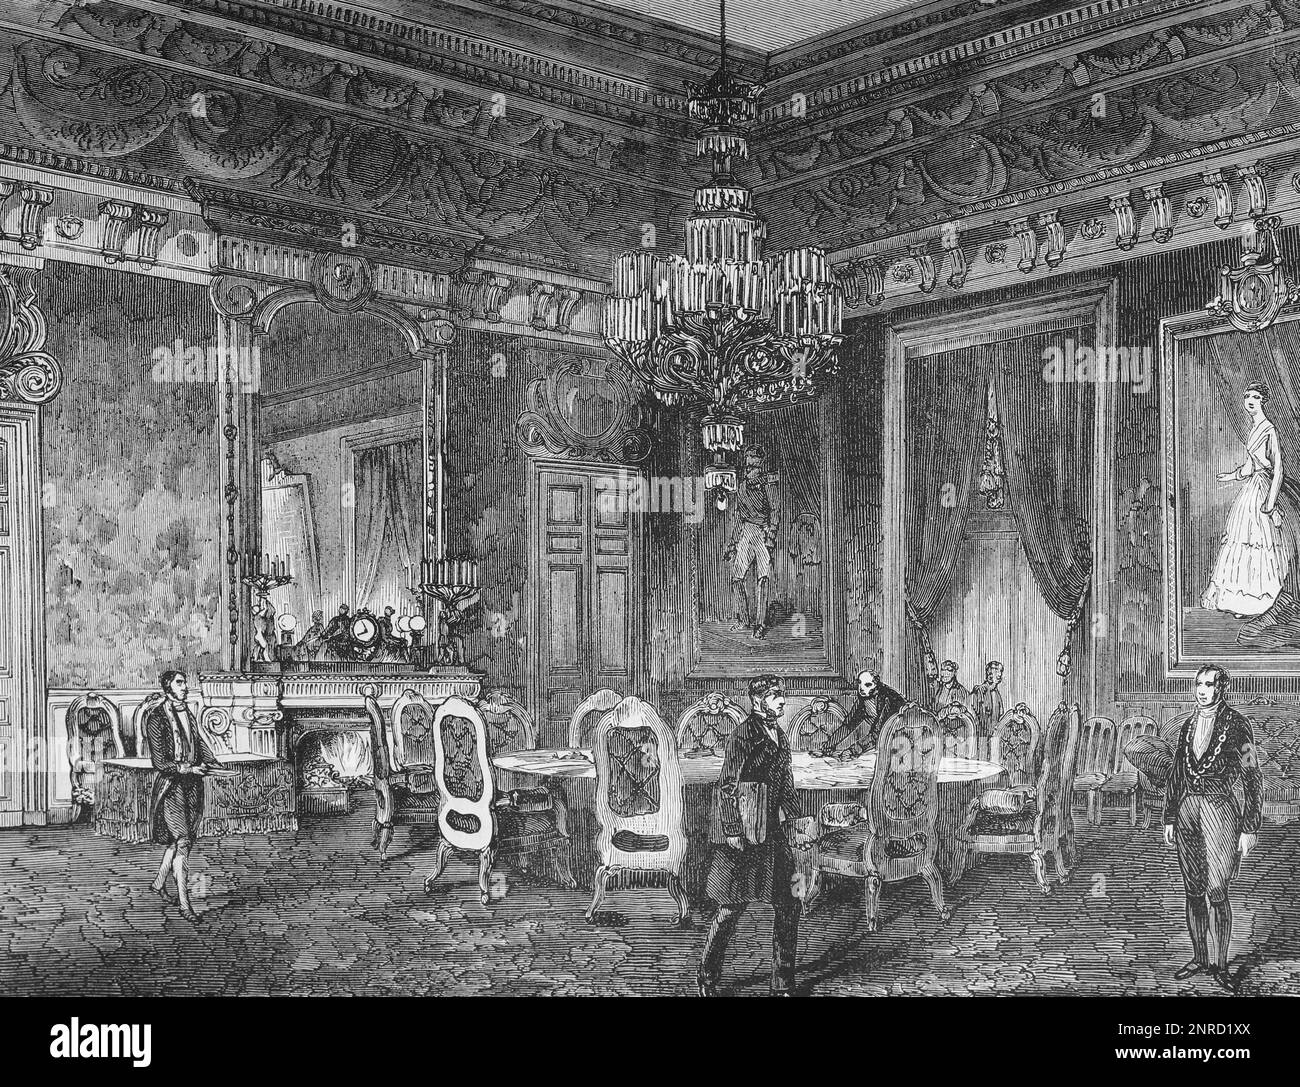 La salle des Ambassadeurs, Paris. Le lieu du Congrès de Paris en 1856 où a eu lieu la signature du Traité de Paris qui a mis fin à la guerre de Crimée. Illustration en noir et blanc Banque D'Images